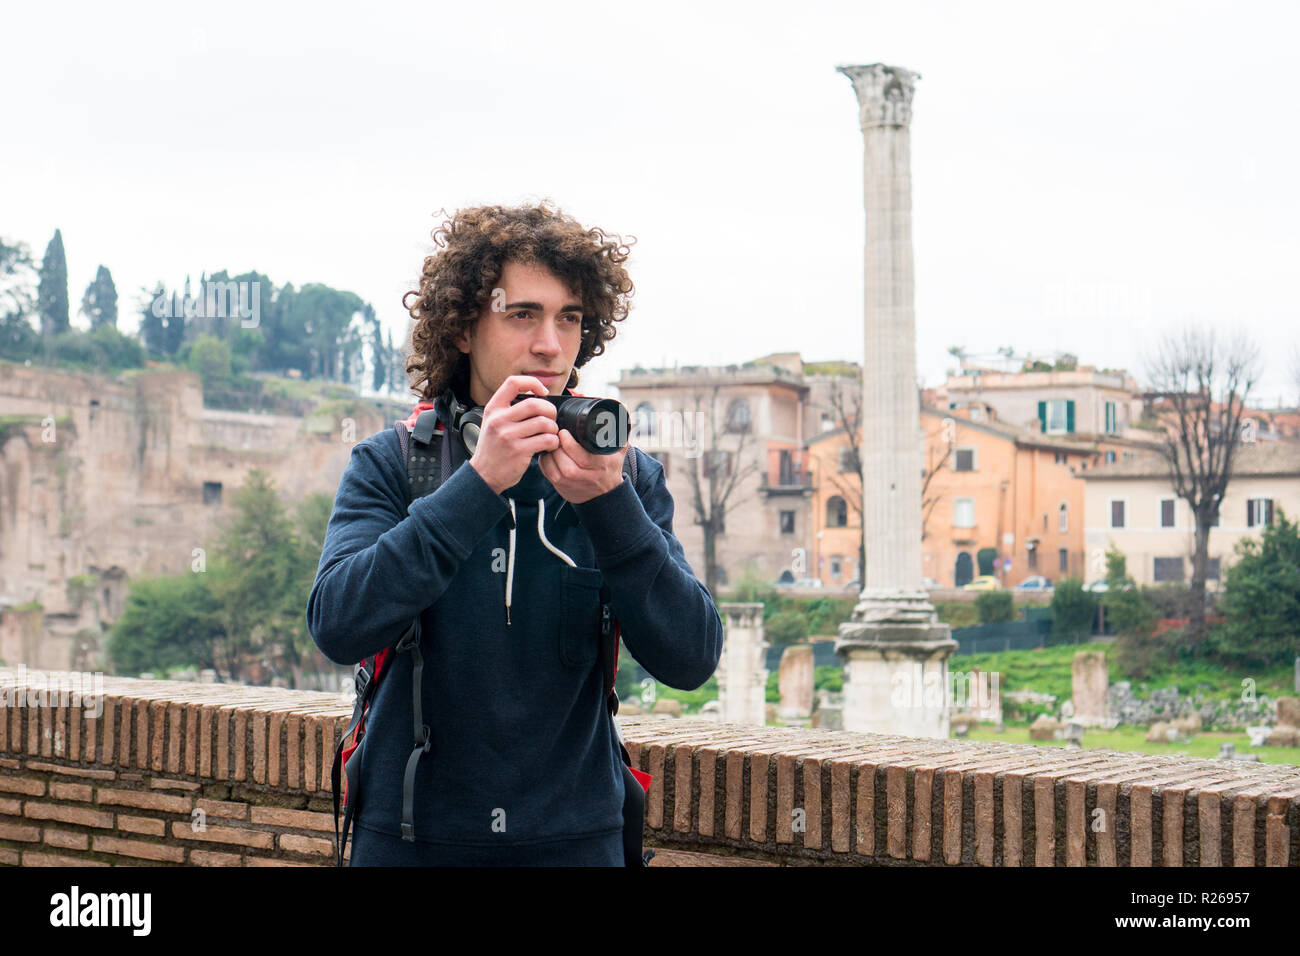 Hübscher junger Tourist mit lockigem Haar Fotos von Forum Romanum in Rom, Italien. Junger Mann mit seiner Kamera Stockfoto